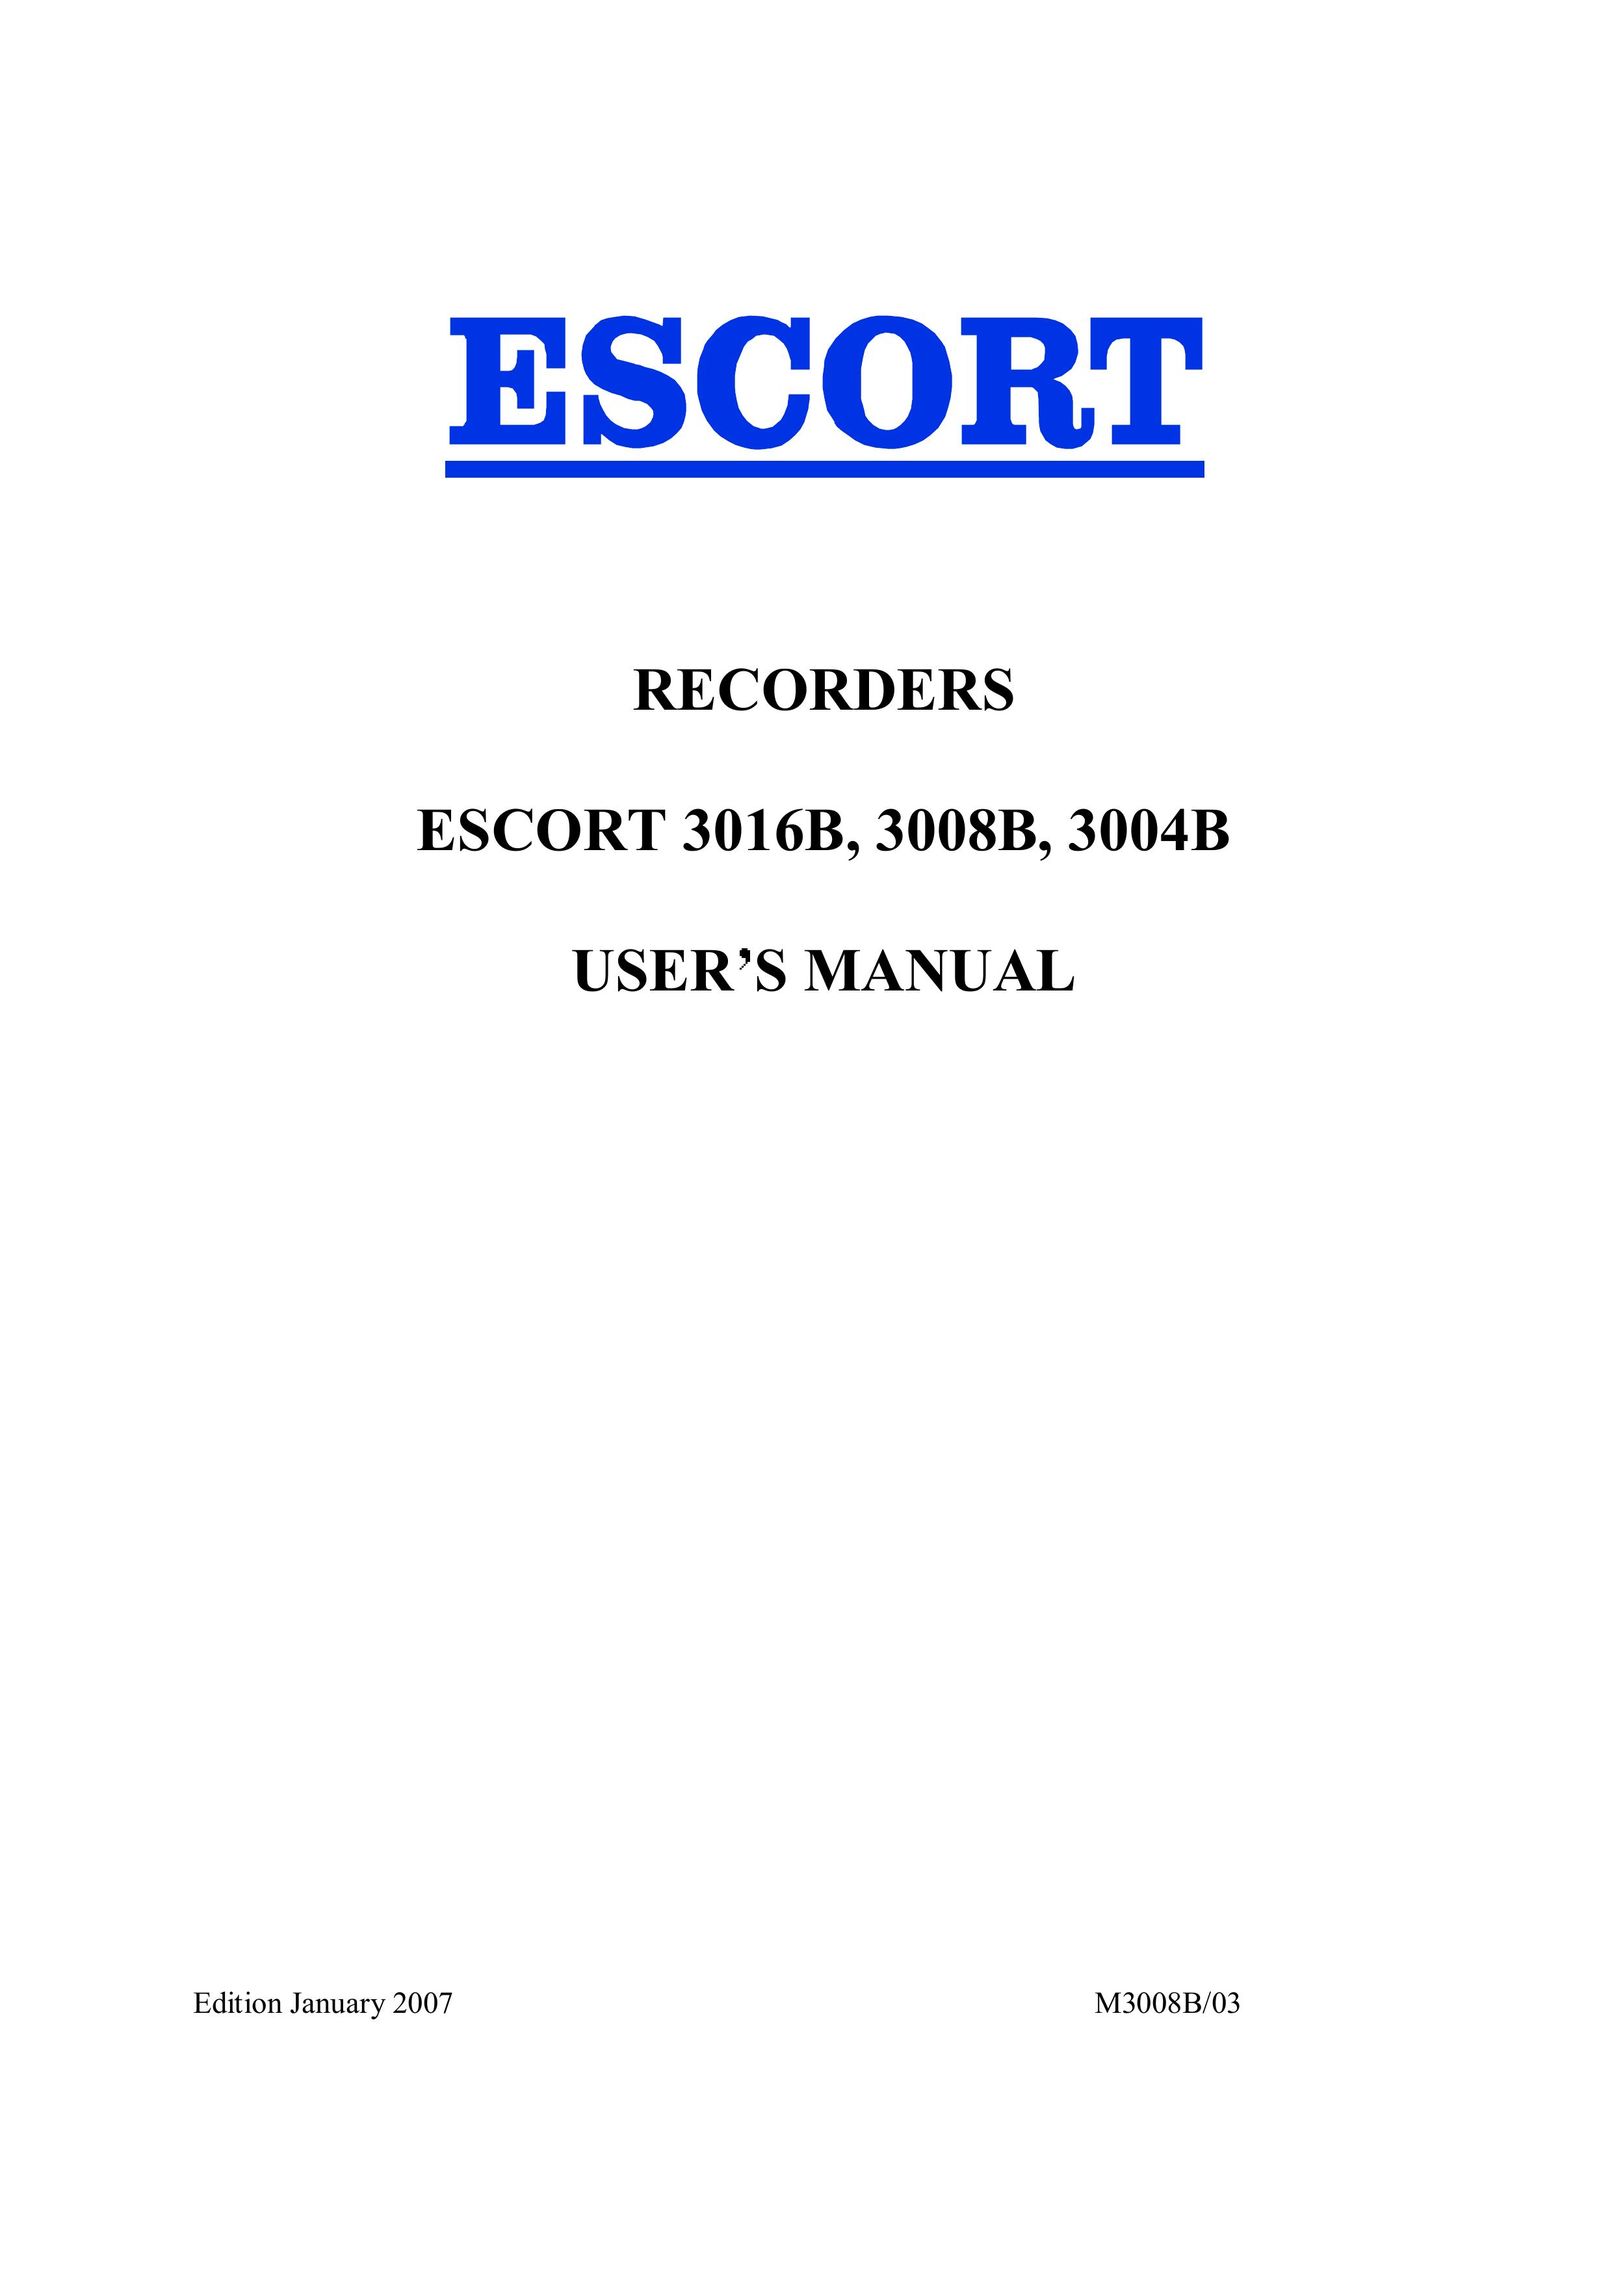 Escort 3004B CD Player User Manual